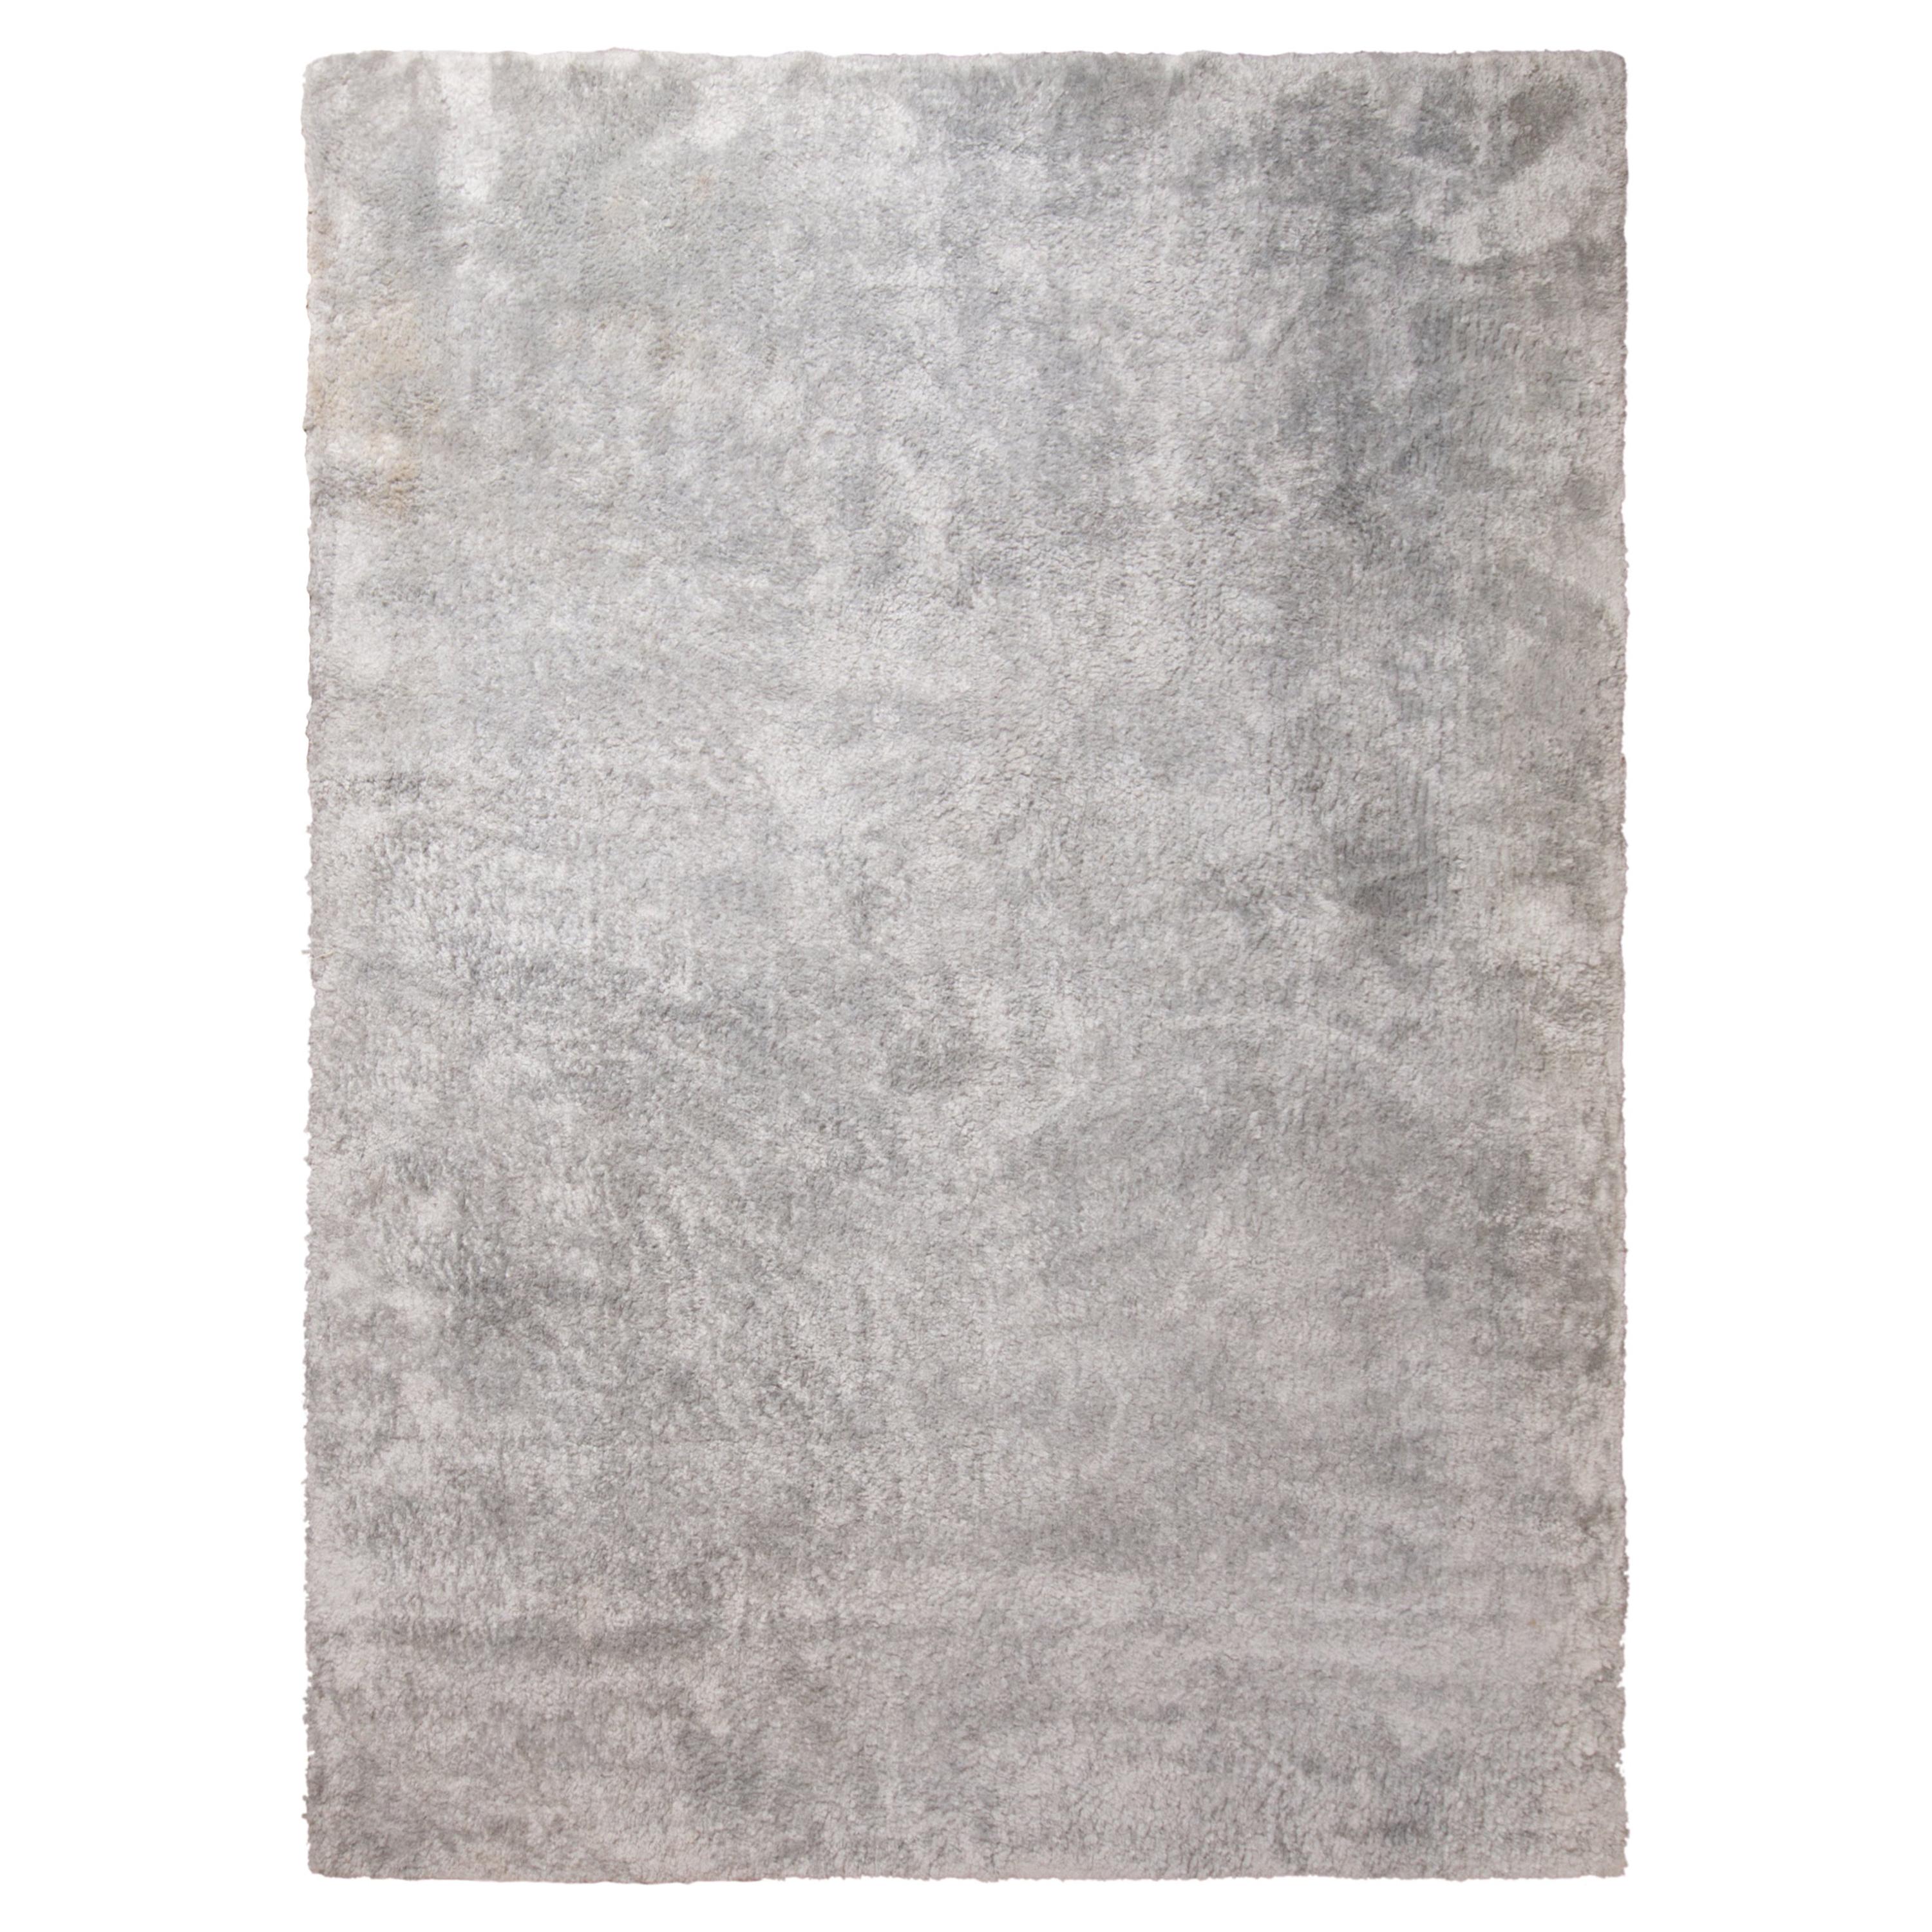 Texturierter, schlichter Teppich von Teppich & Kilims in Grau/Silber in zwei Farbtönen, hoher Flor